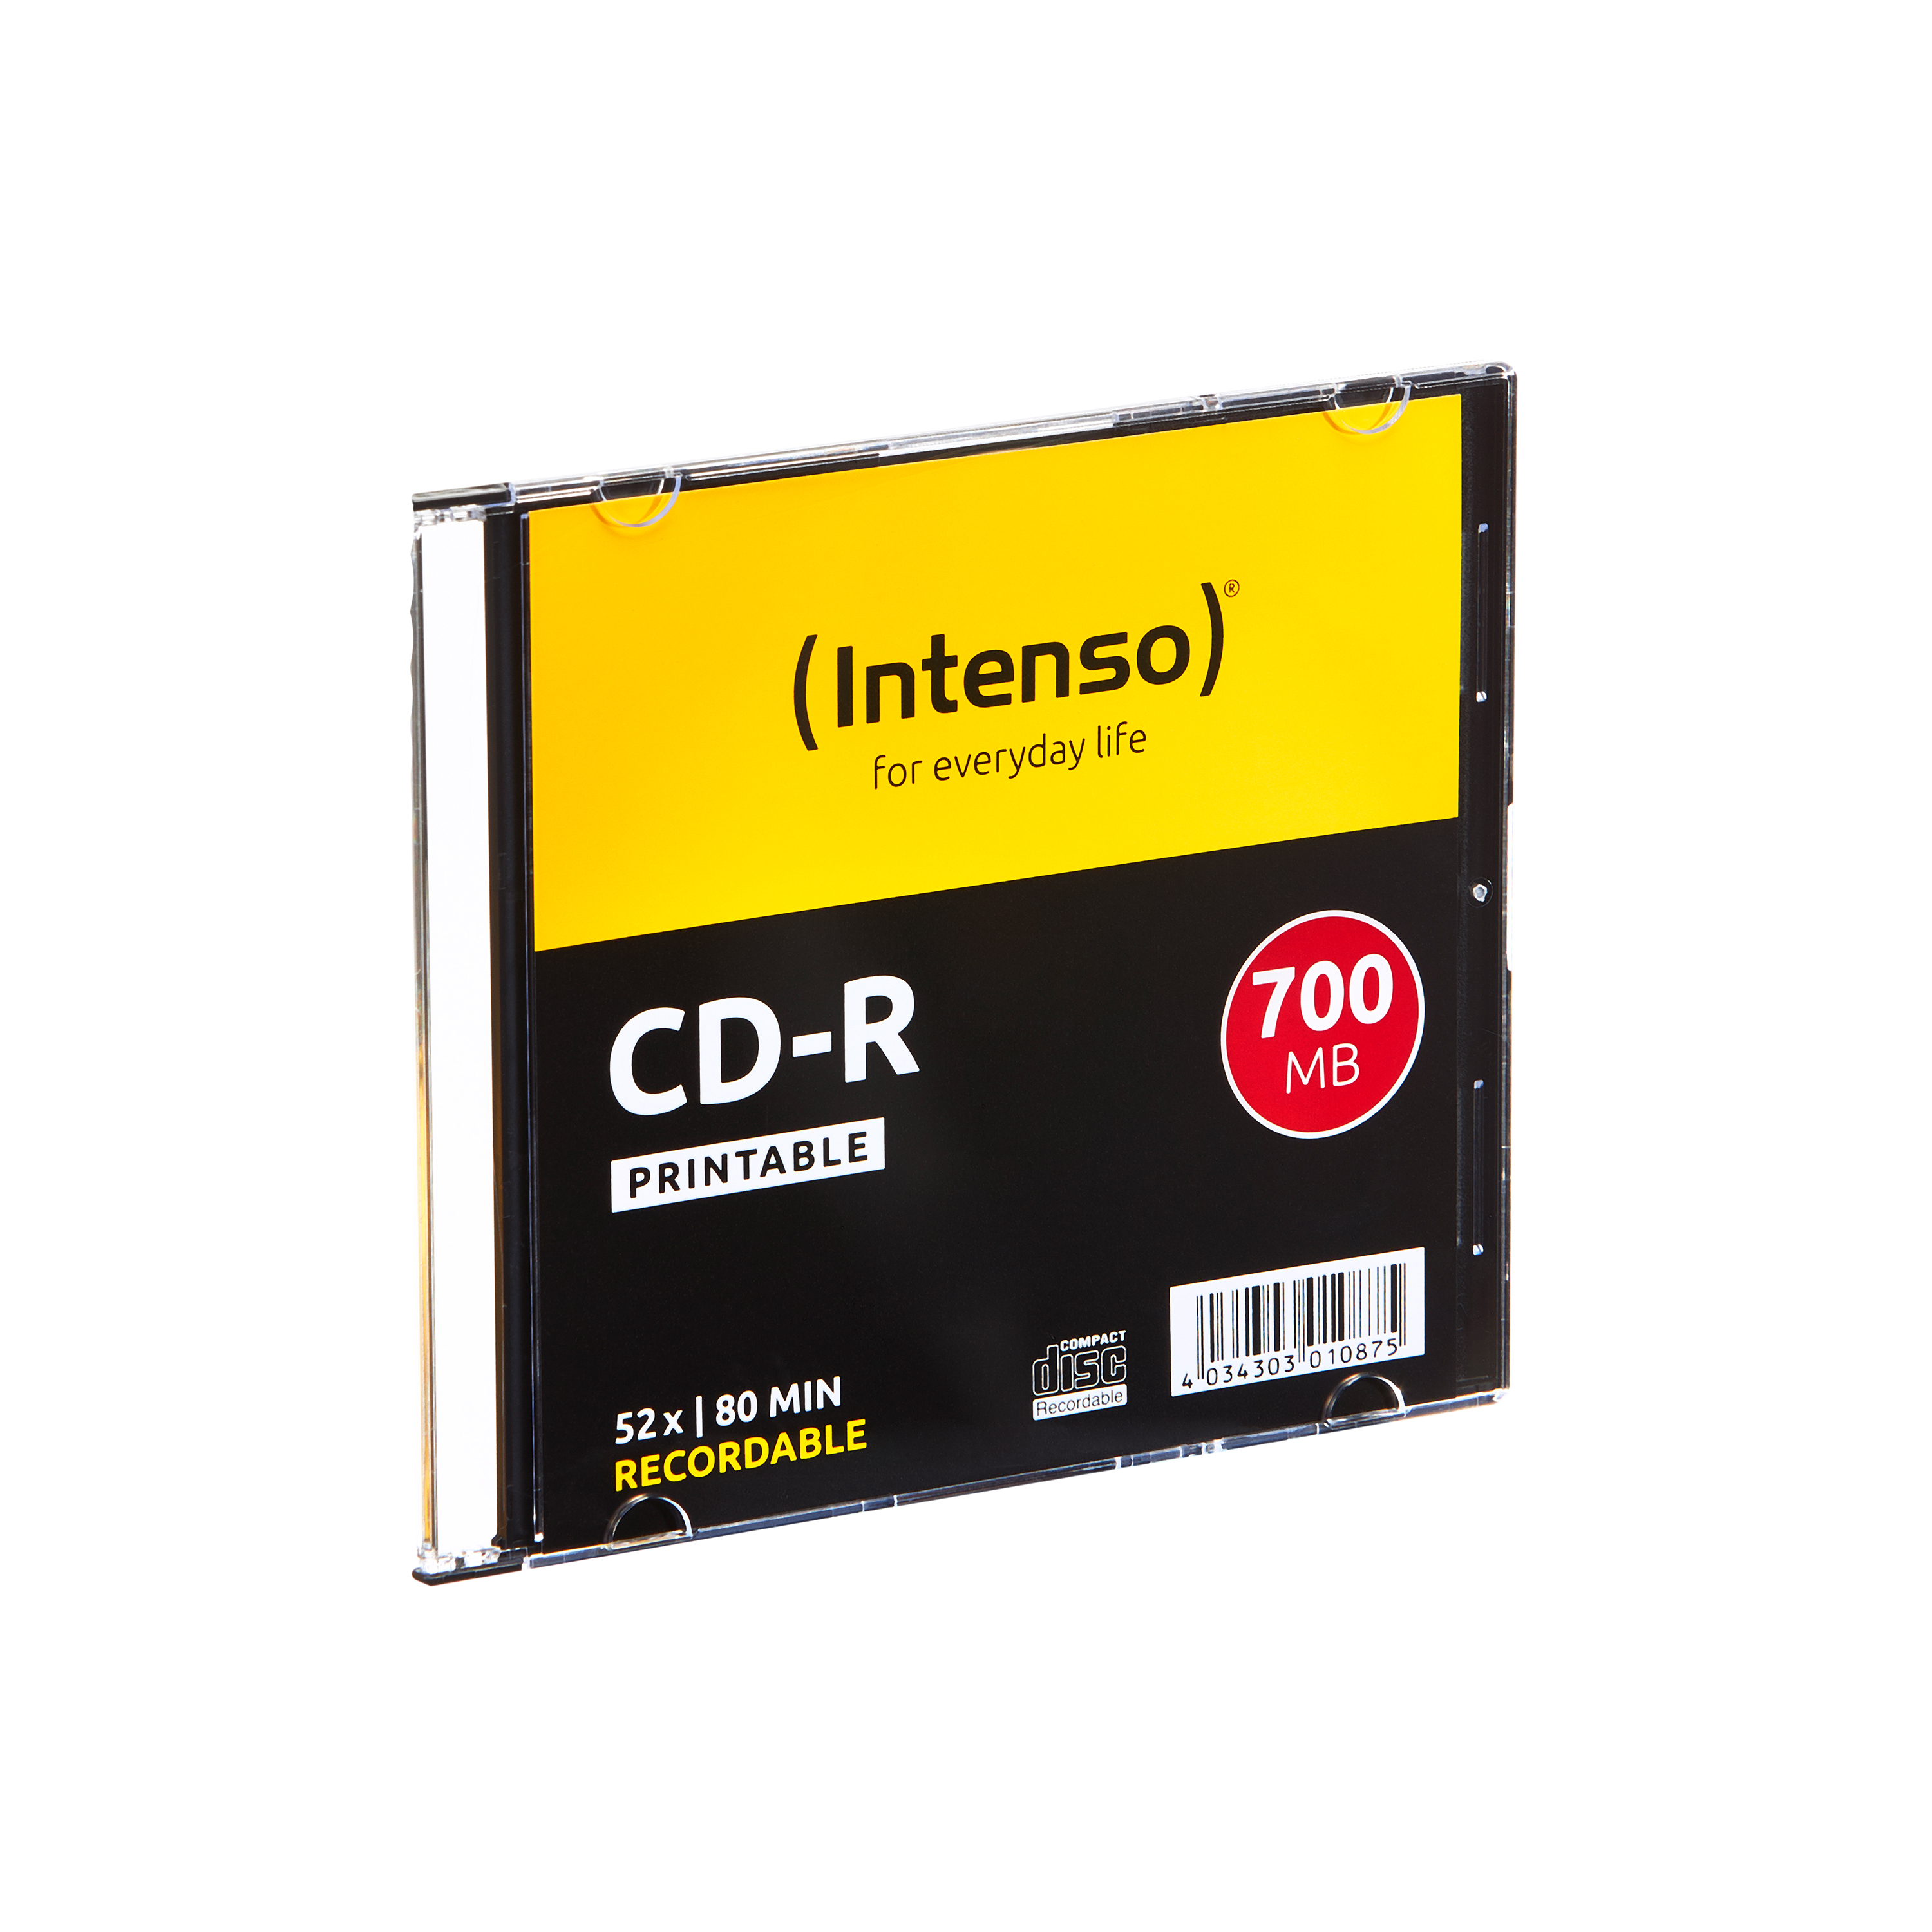 CD-R CD-R 10er Pack Bedruckbar Slim Case INTENSO